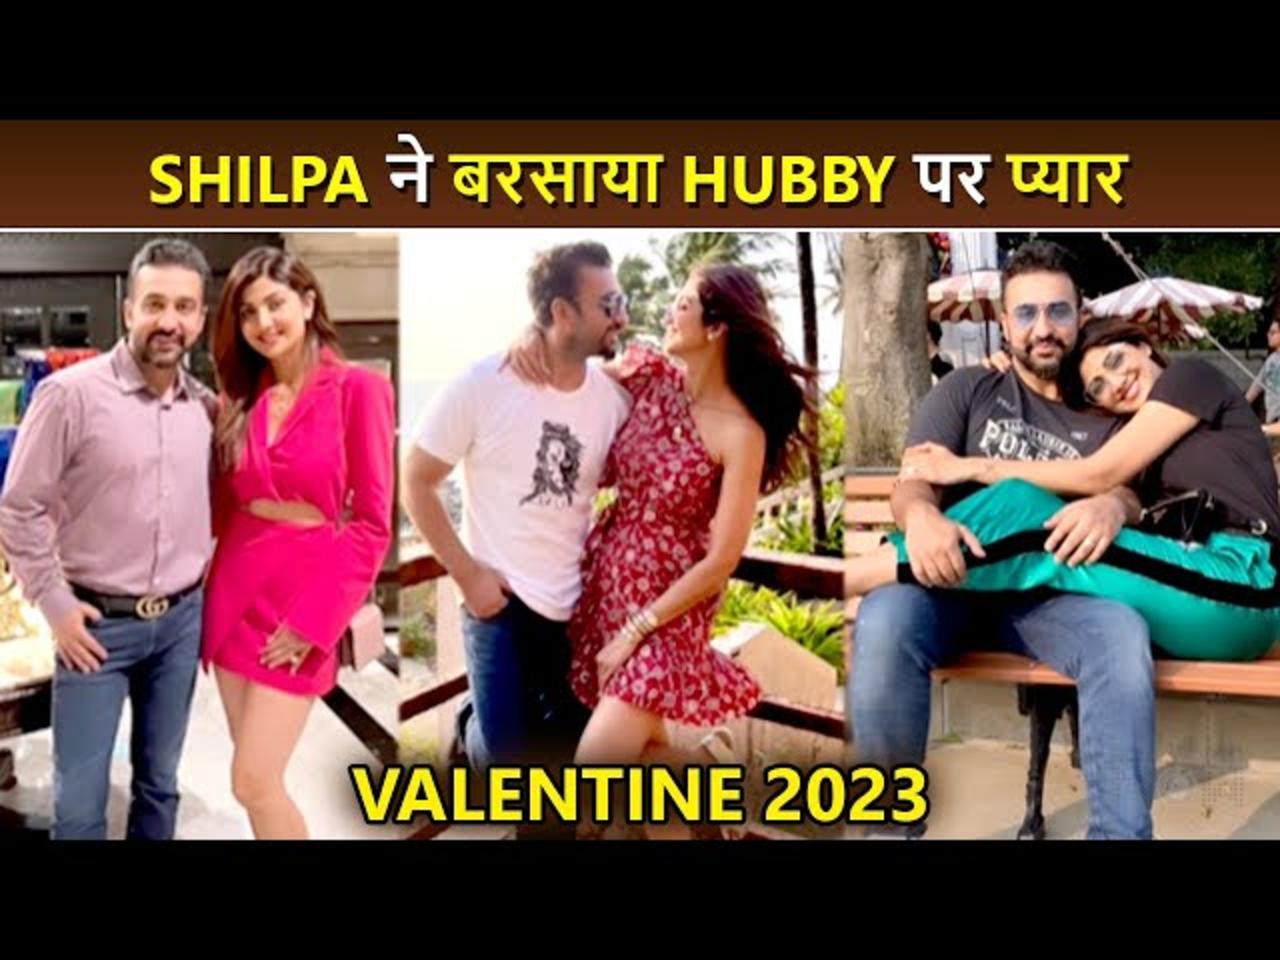 Valentine 2023: Shilpa Shetty Shares A Cute Video, Showers Love On Raj Kundra